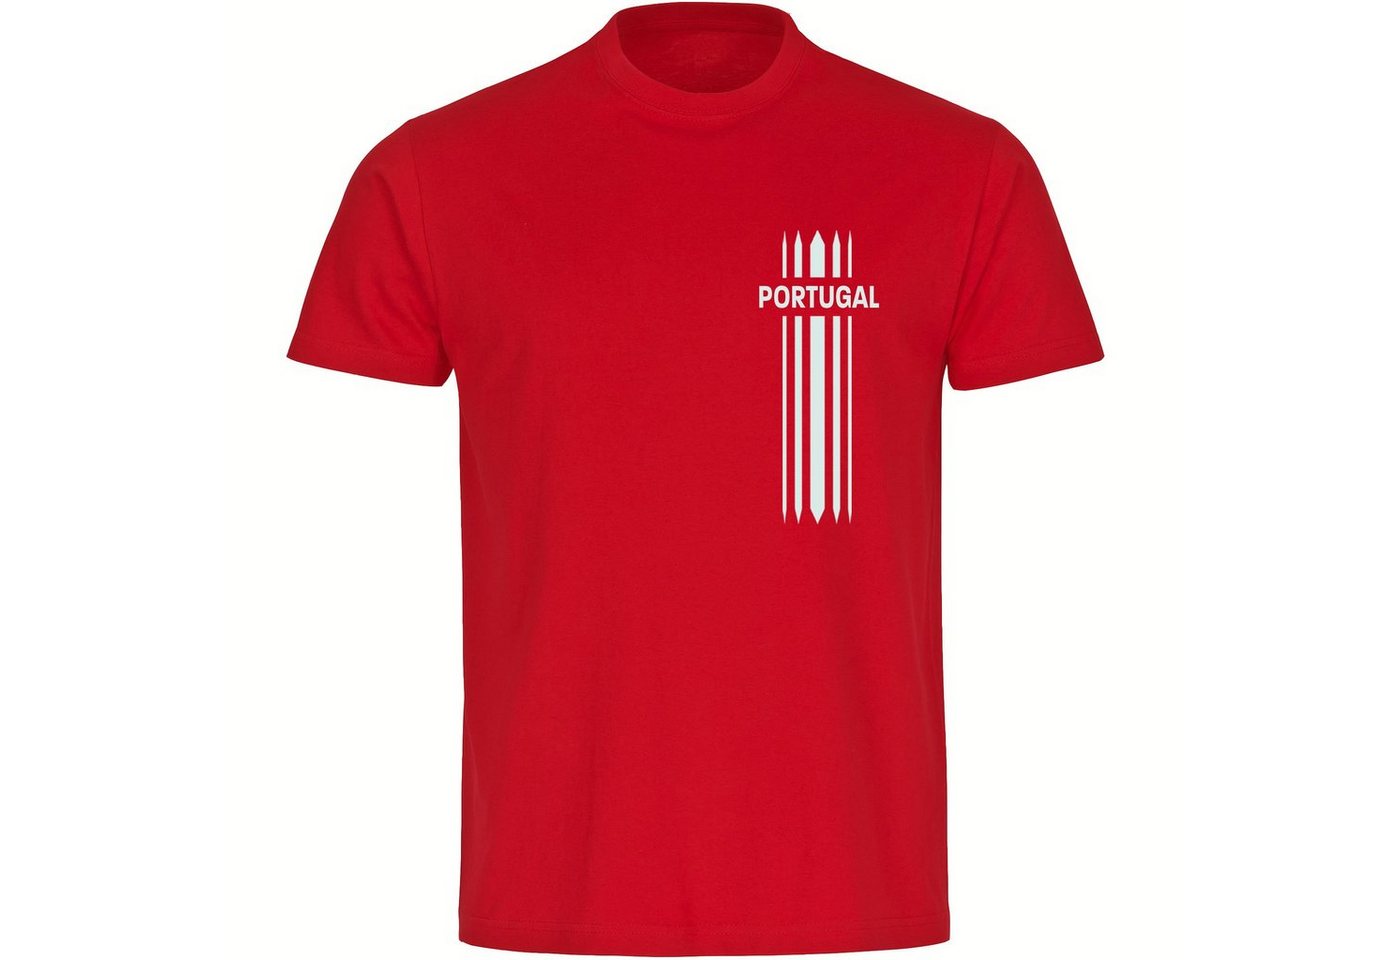 multifanshop T-Shirt Herren Portugal - Streifen - Männer von multifanshop